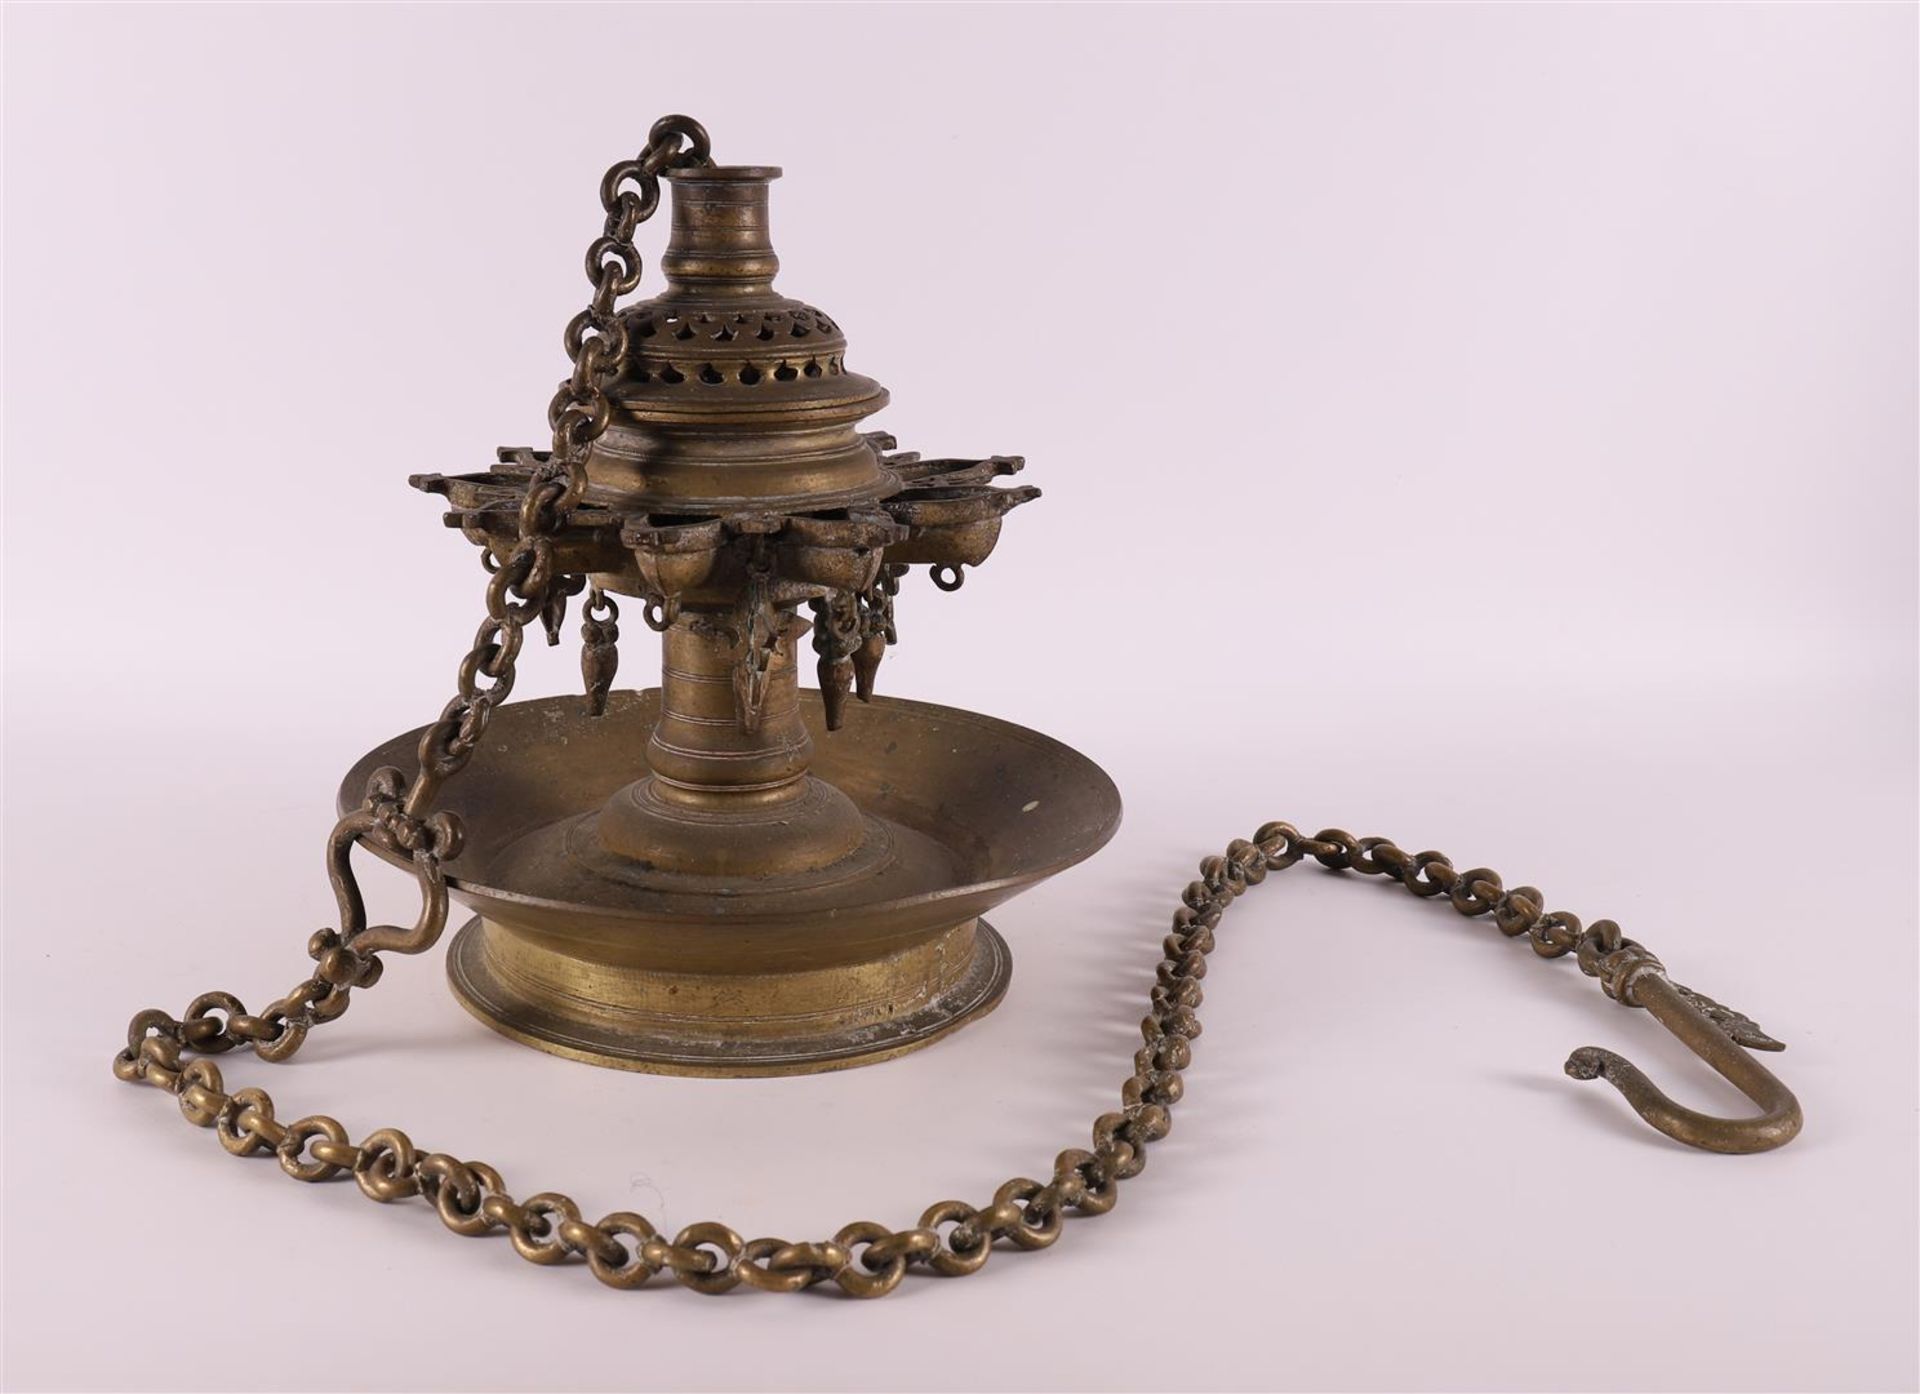 A bronze Shabbat lamp, around 1900, - Image 2 of 2